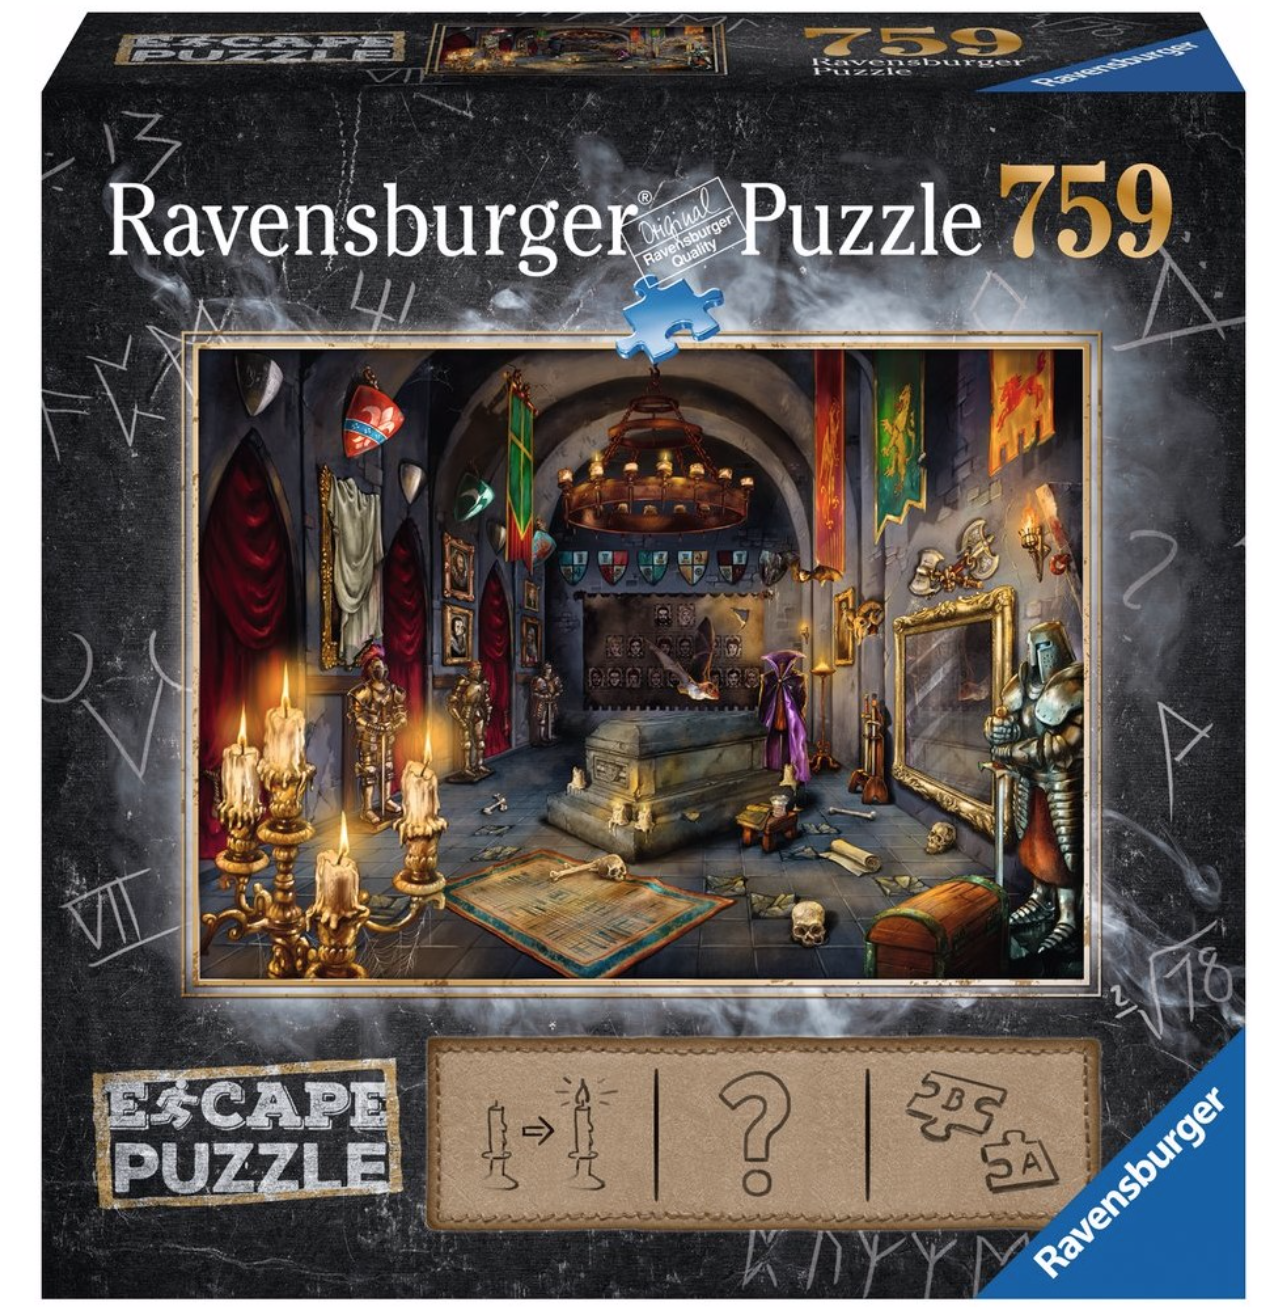 Acheter des puzzles de Ravensburger bon marché? Vaste choix! - Puzzles123